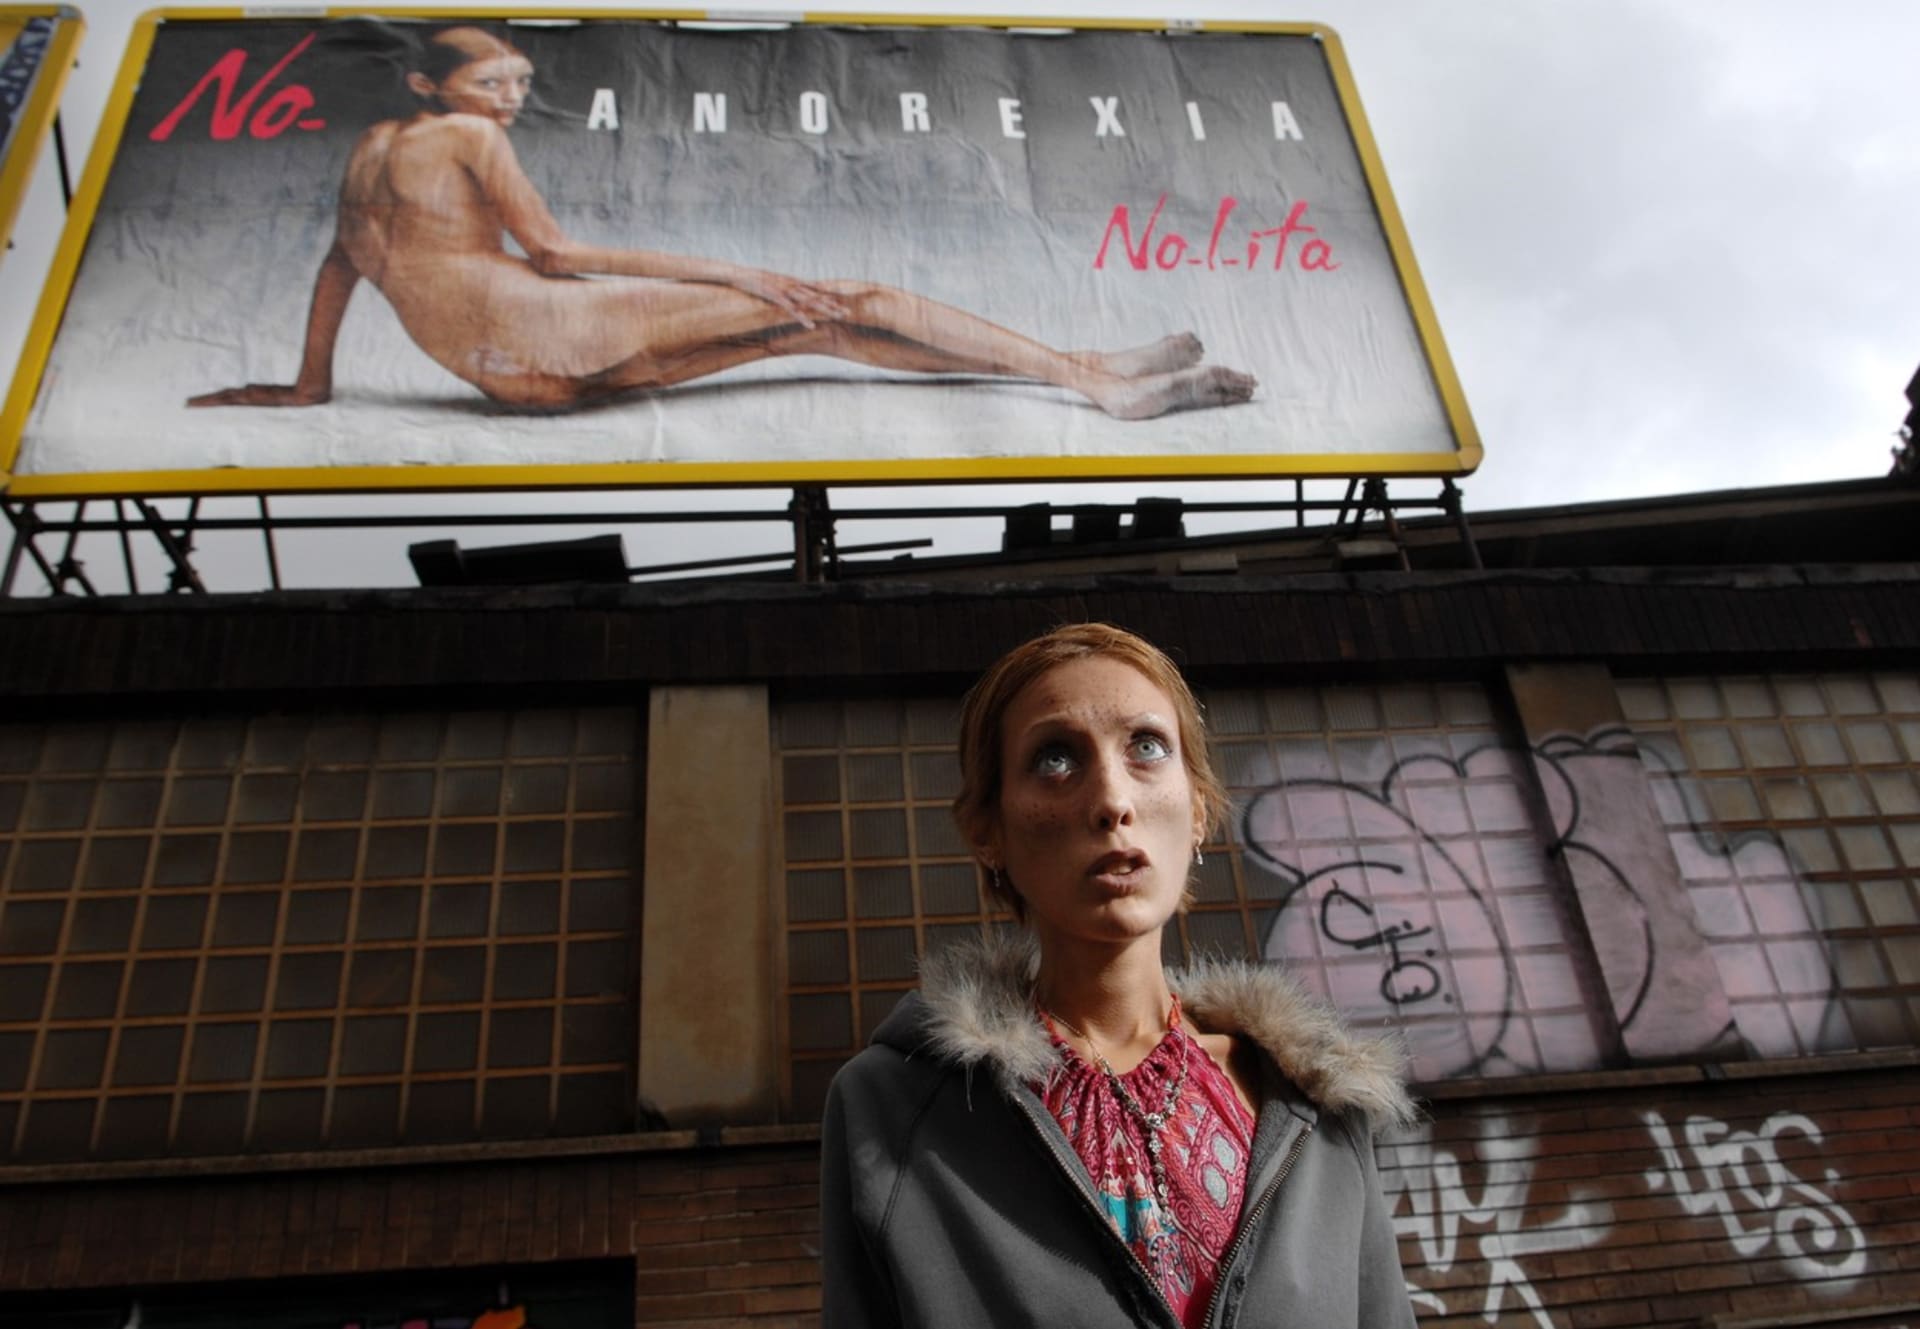 Bilboardy se na veřejnosti objevily ve stejnou dobu, kdy zrovna v Itálii probíhal Fashion Week, aby upozornili na problematiku anorexie v modelingu.